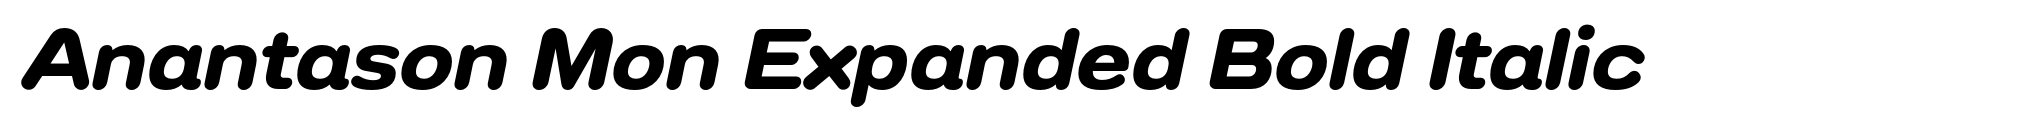 Anantason Mon Expanded Bold Italic image